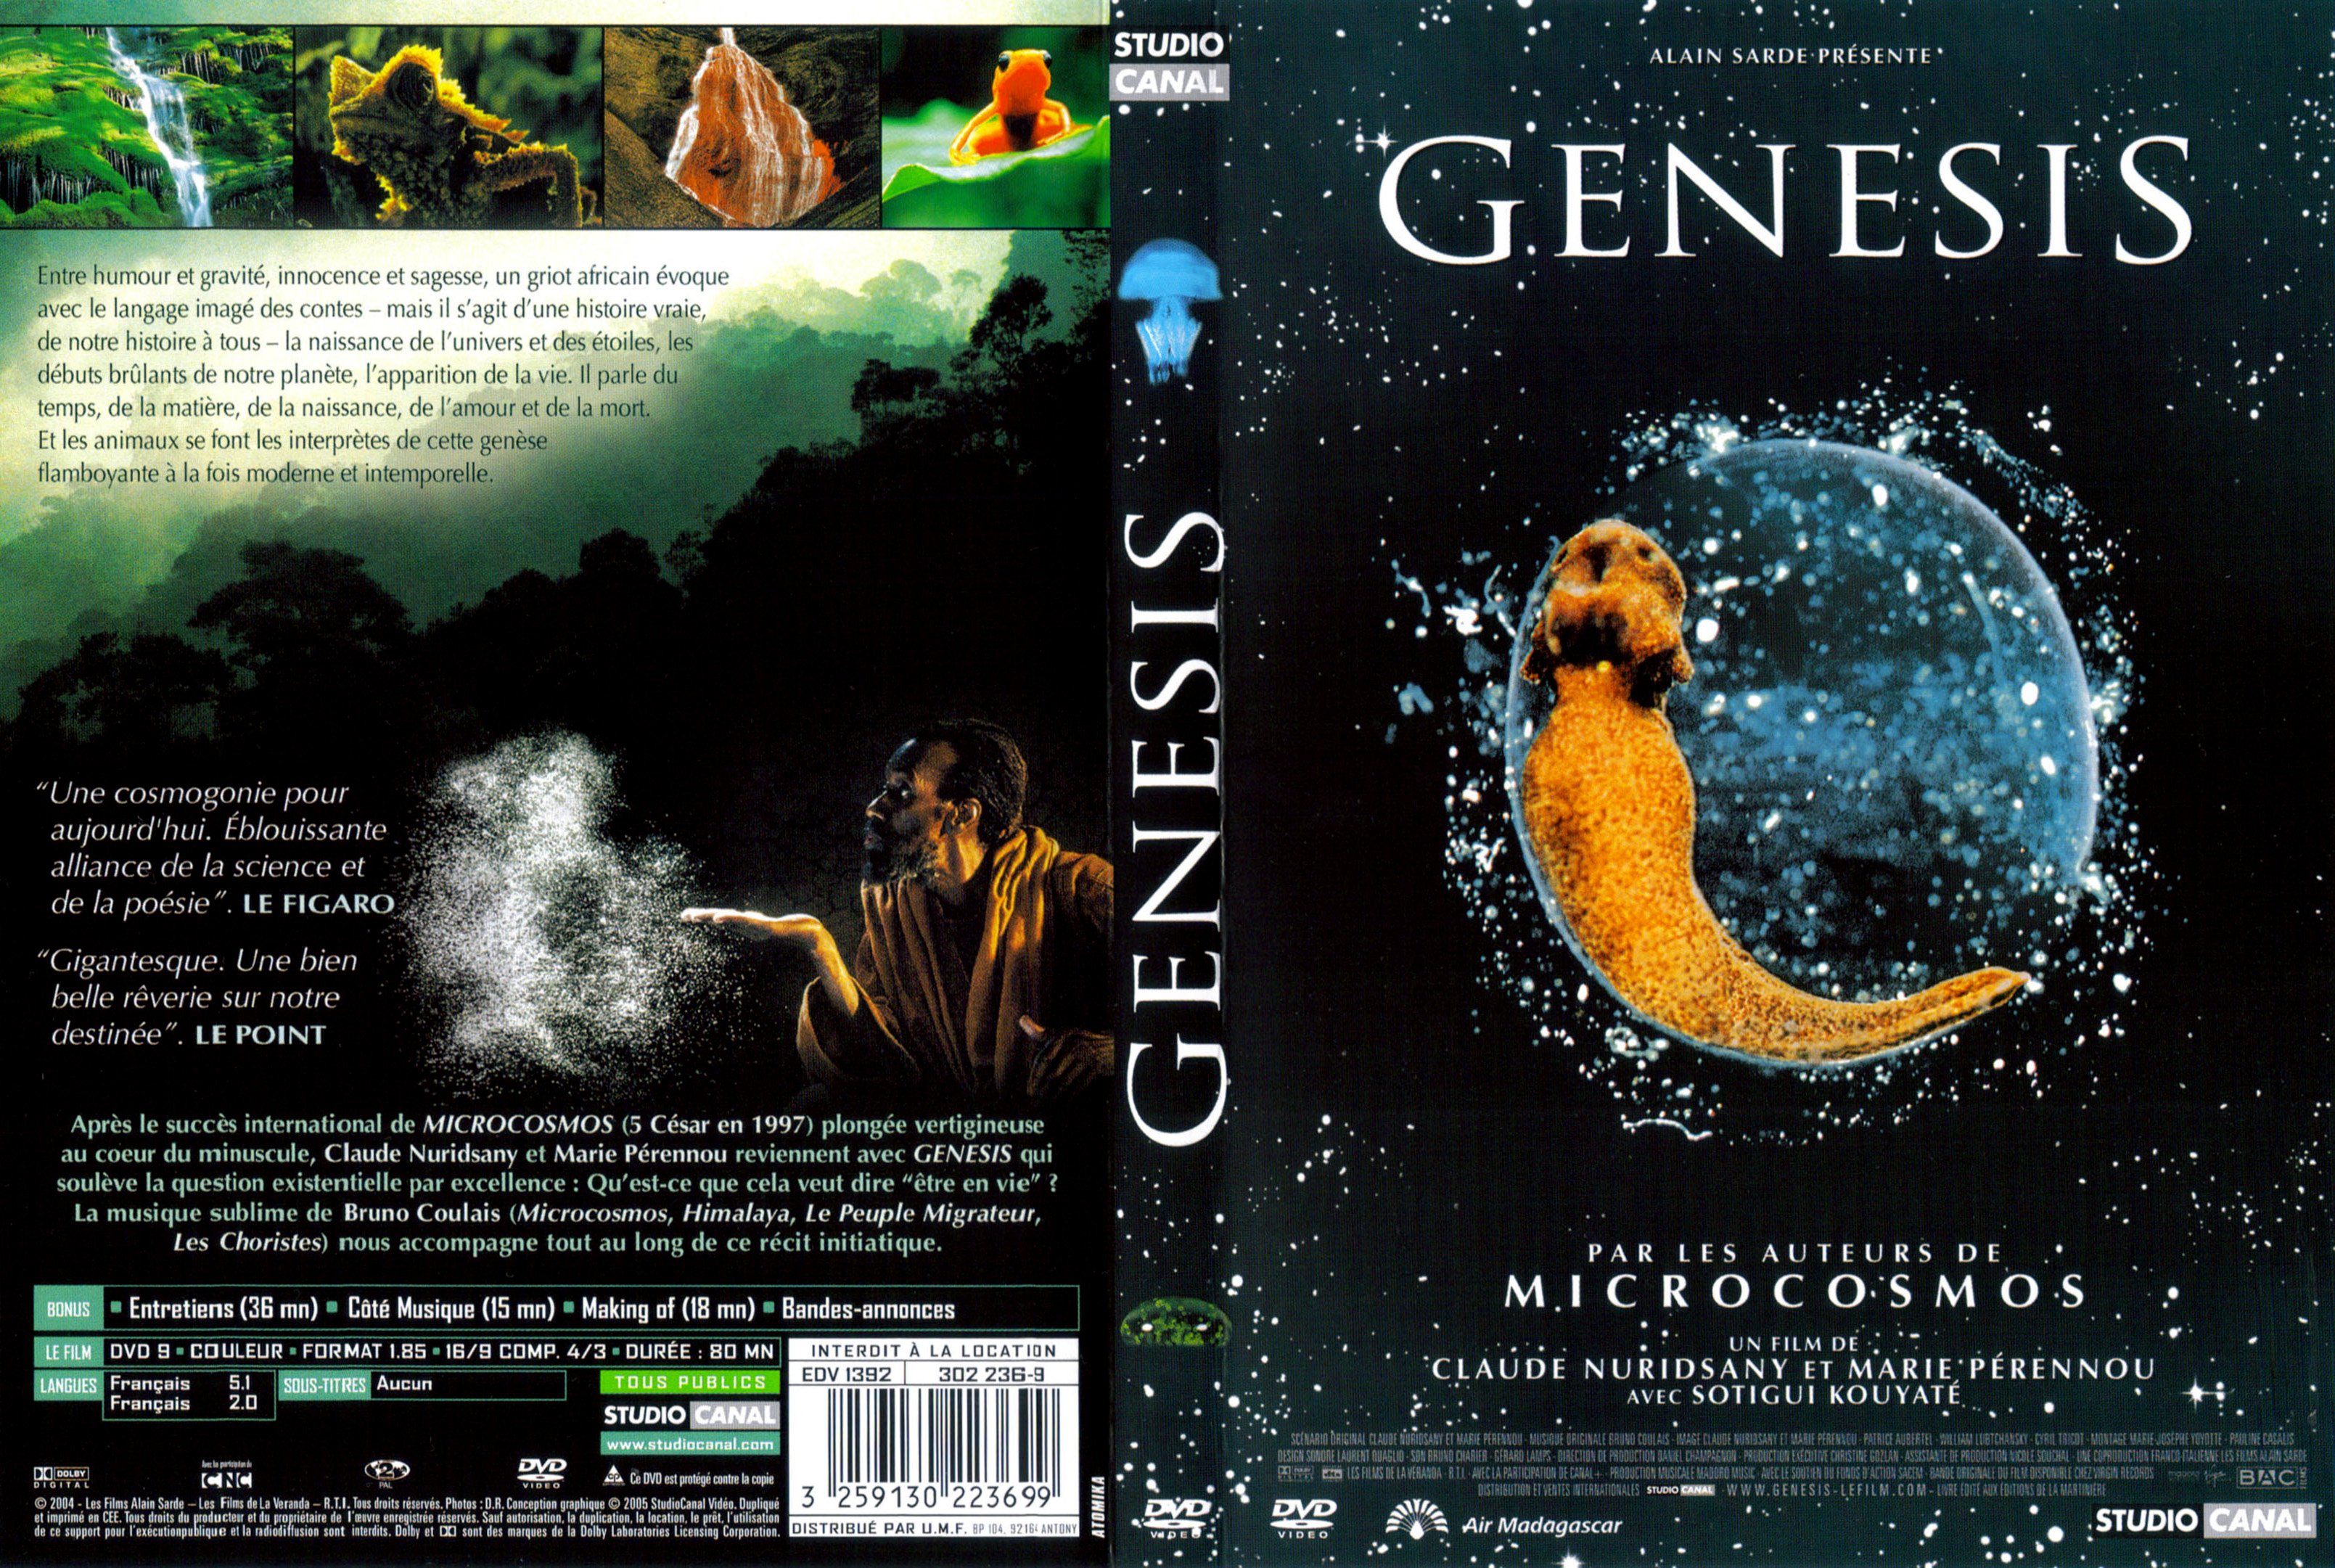 Jaquette DVD Genesis v2